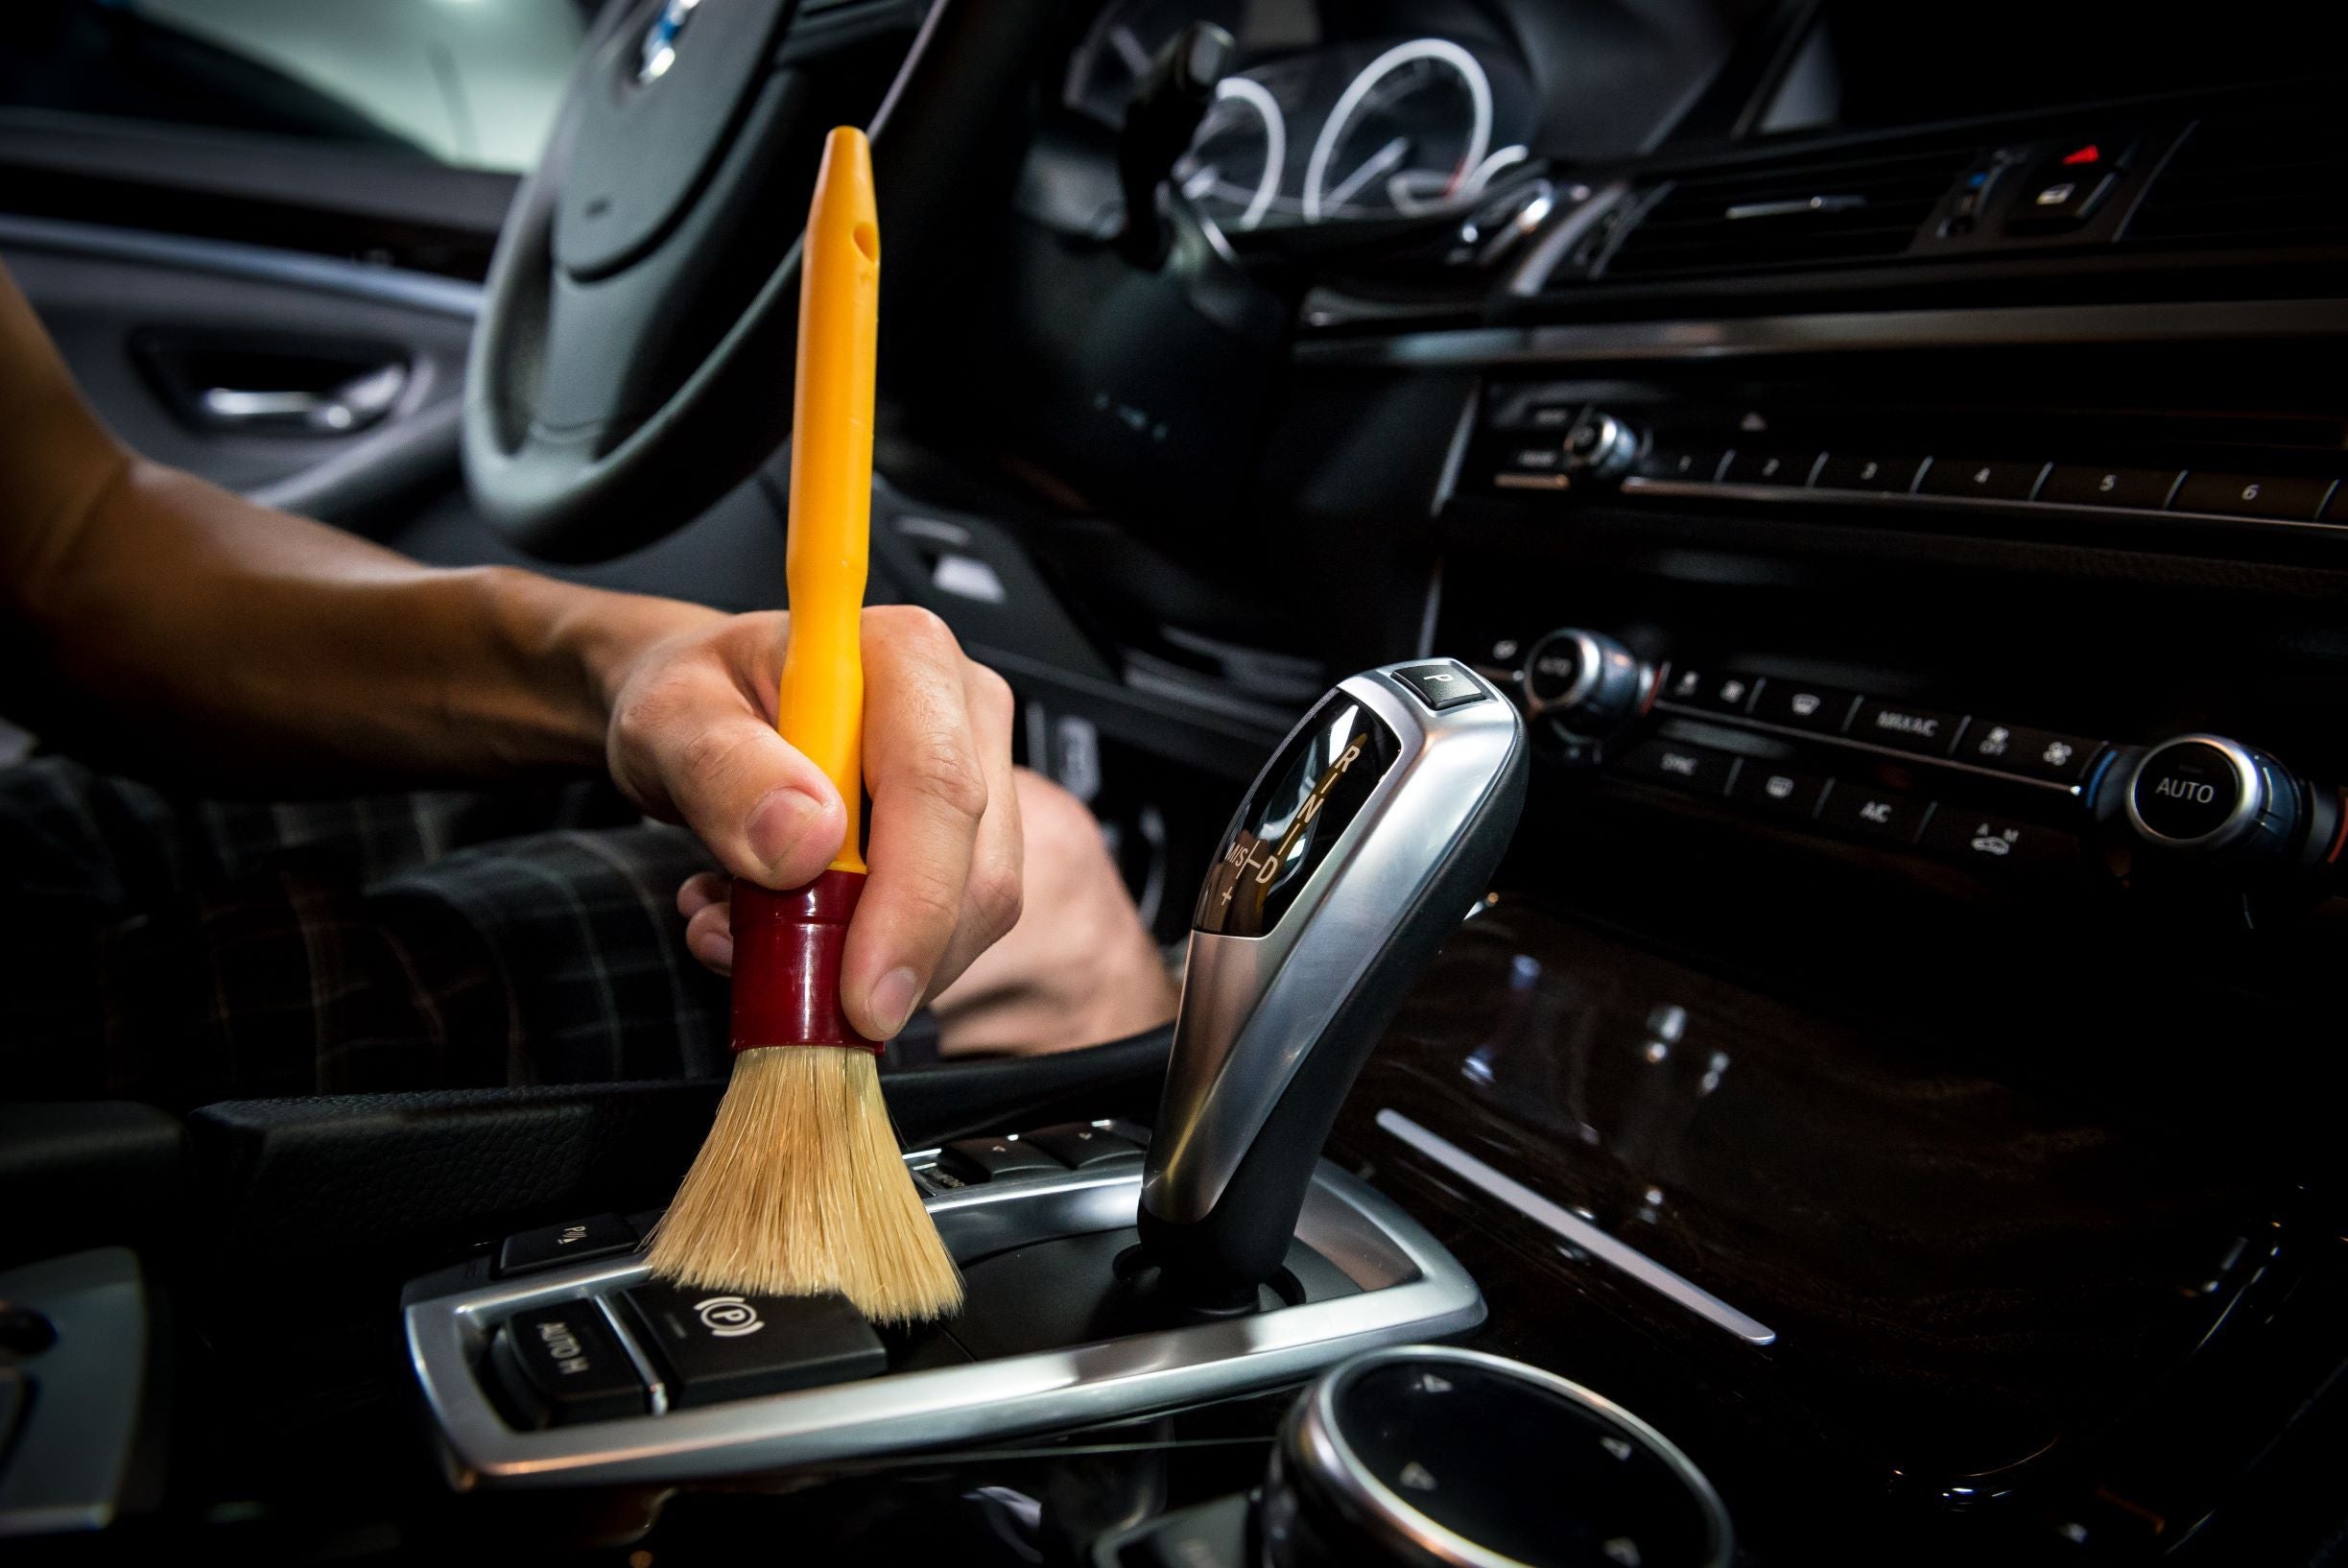 INTERIOR CAR CLEANING KIT – Autobeam